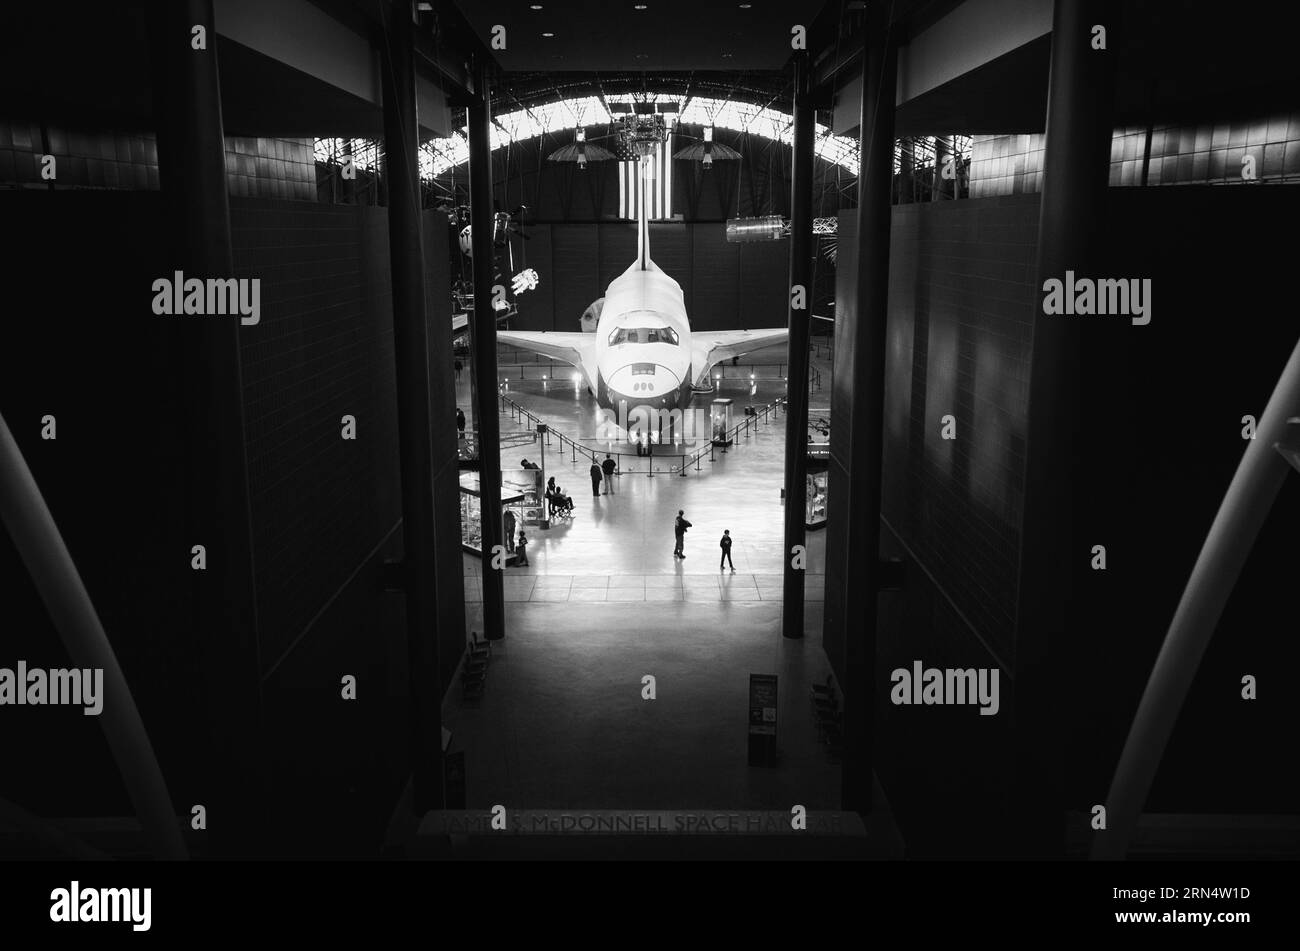 CHANTILLY, Virginia, USA – das Space Shuttle Discovery ist im Udvar-Hazy Center, einem nebengebäude des Smithsonian National Air and Space Museum, ausgestellt. Als einer der Flaggschiffe der NASA absolvierte die Discovery 39 Missionen über 27 Jahre vor ihrer Ausmusterung. Stockfoto